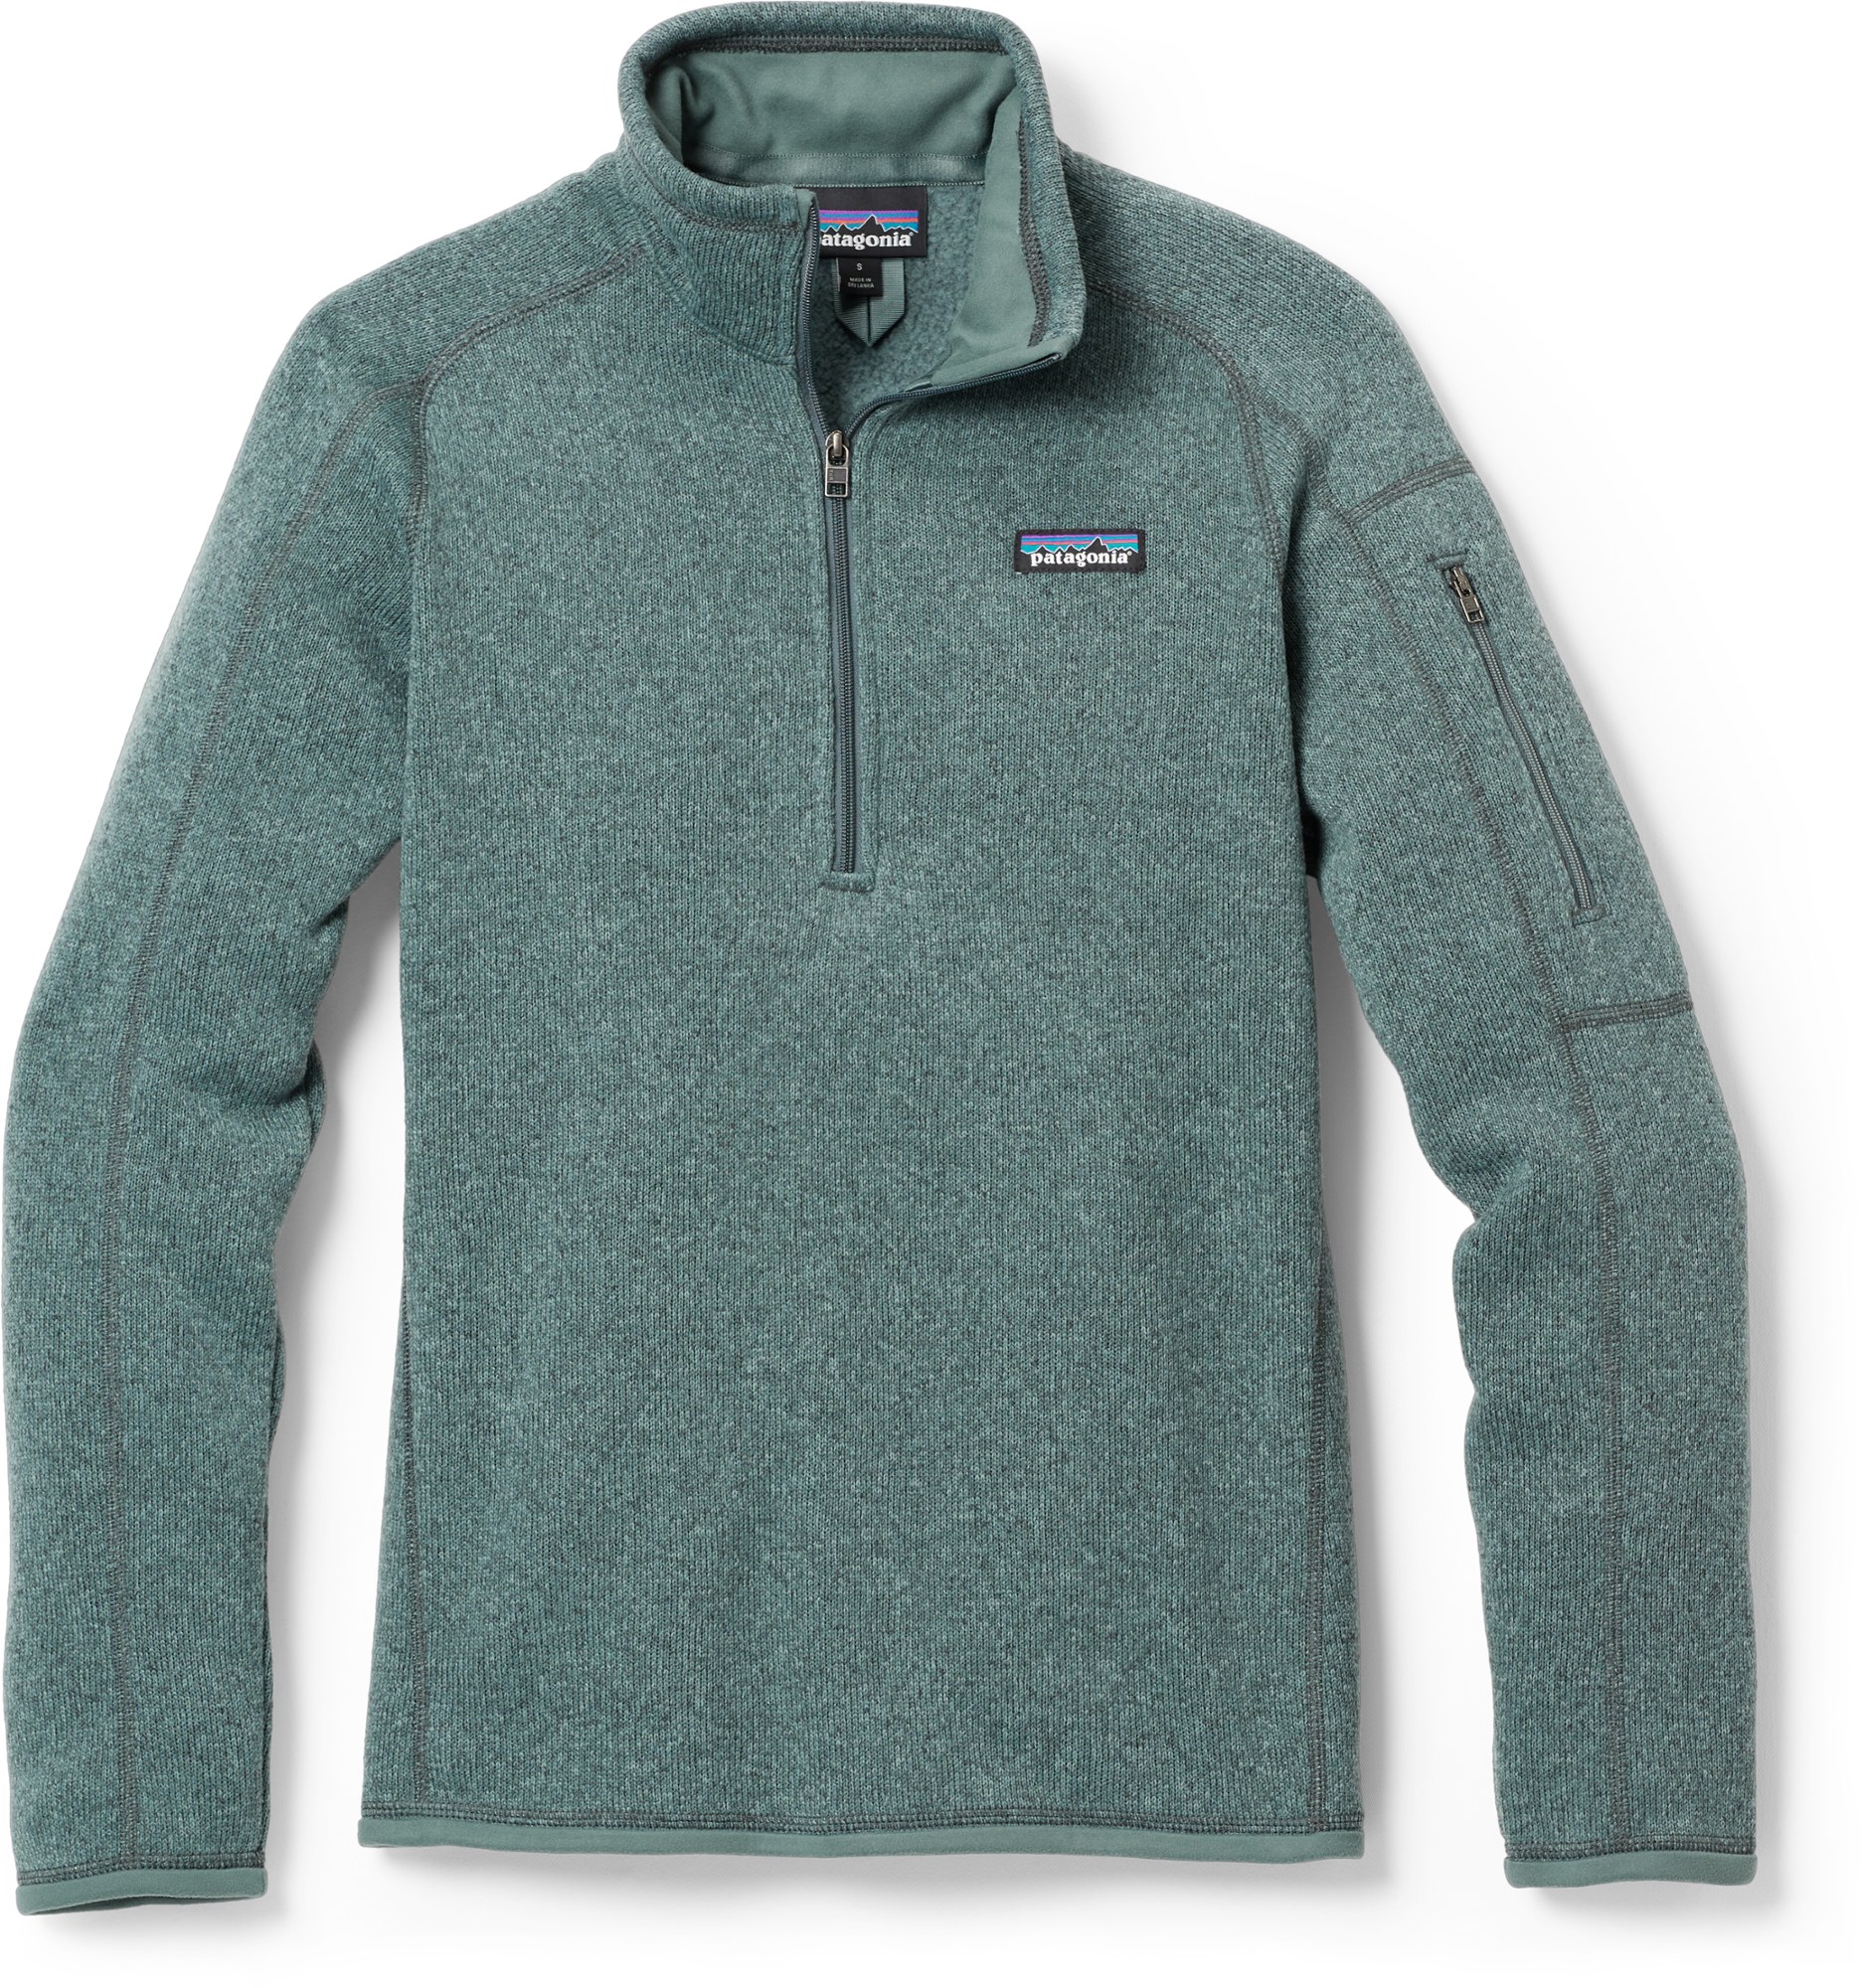 Флисовый пуловер Better Sweater с молнией в четверть — женский Patagonia, зеленый